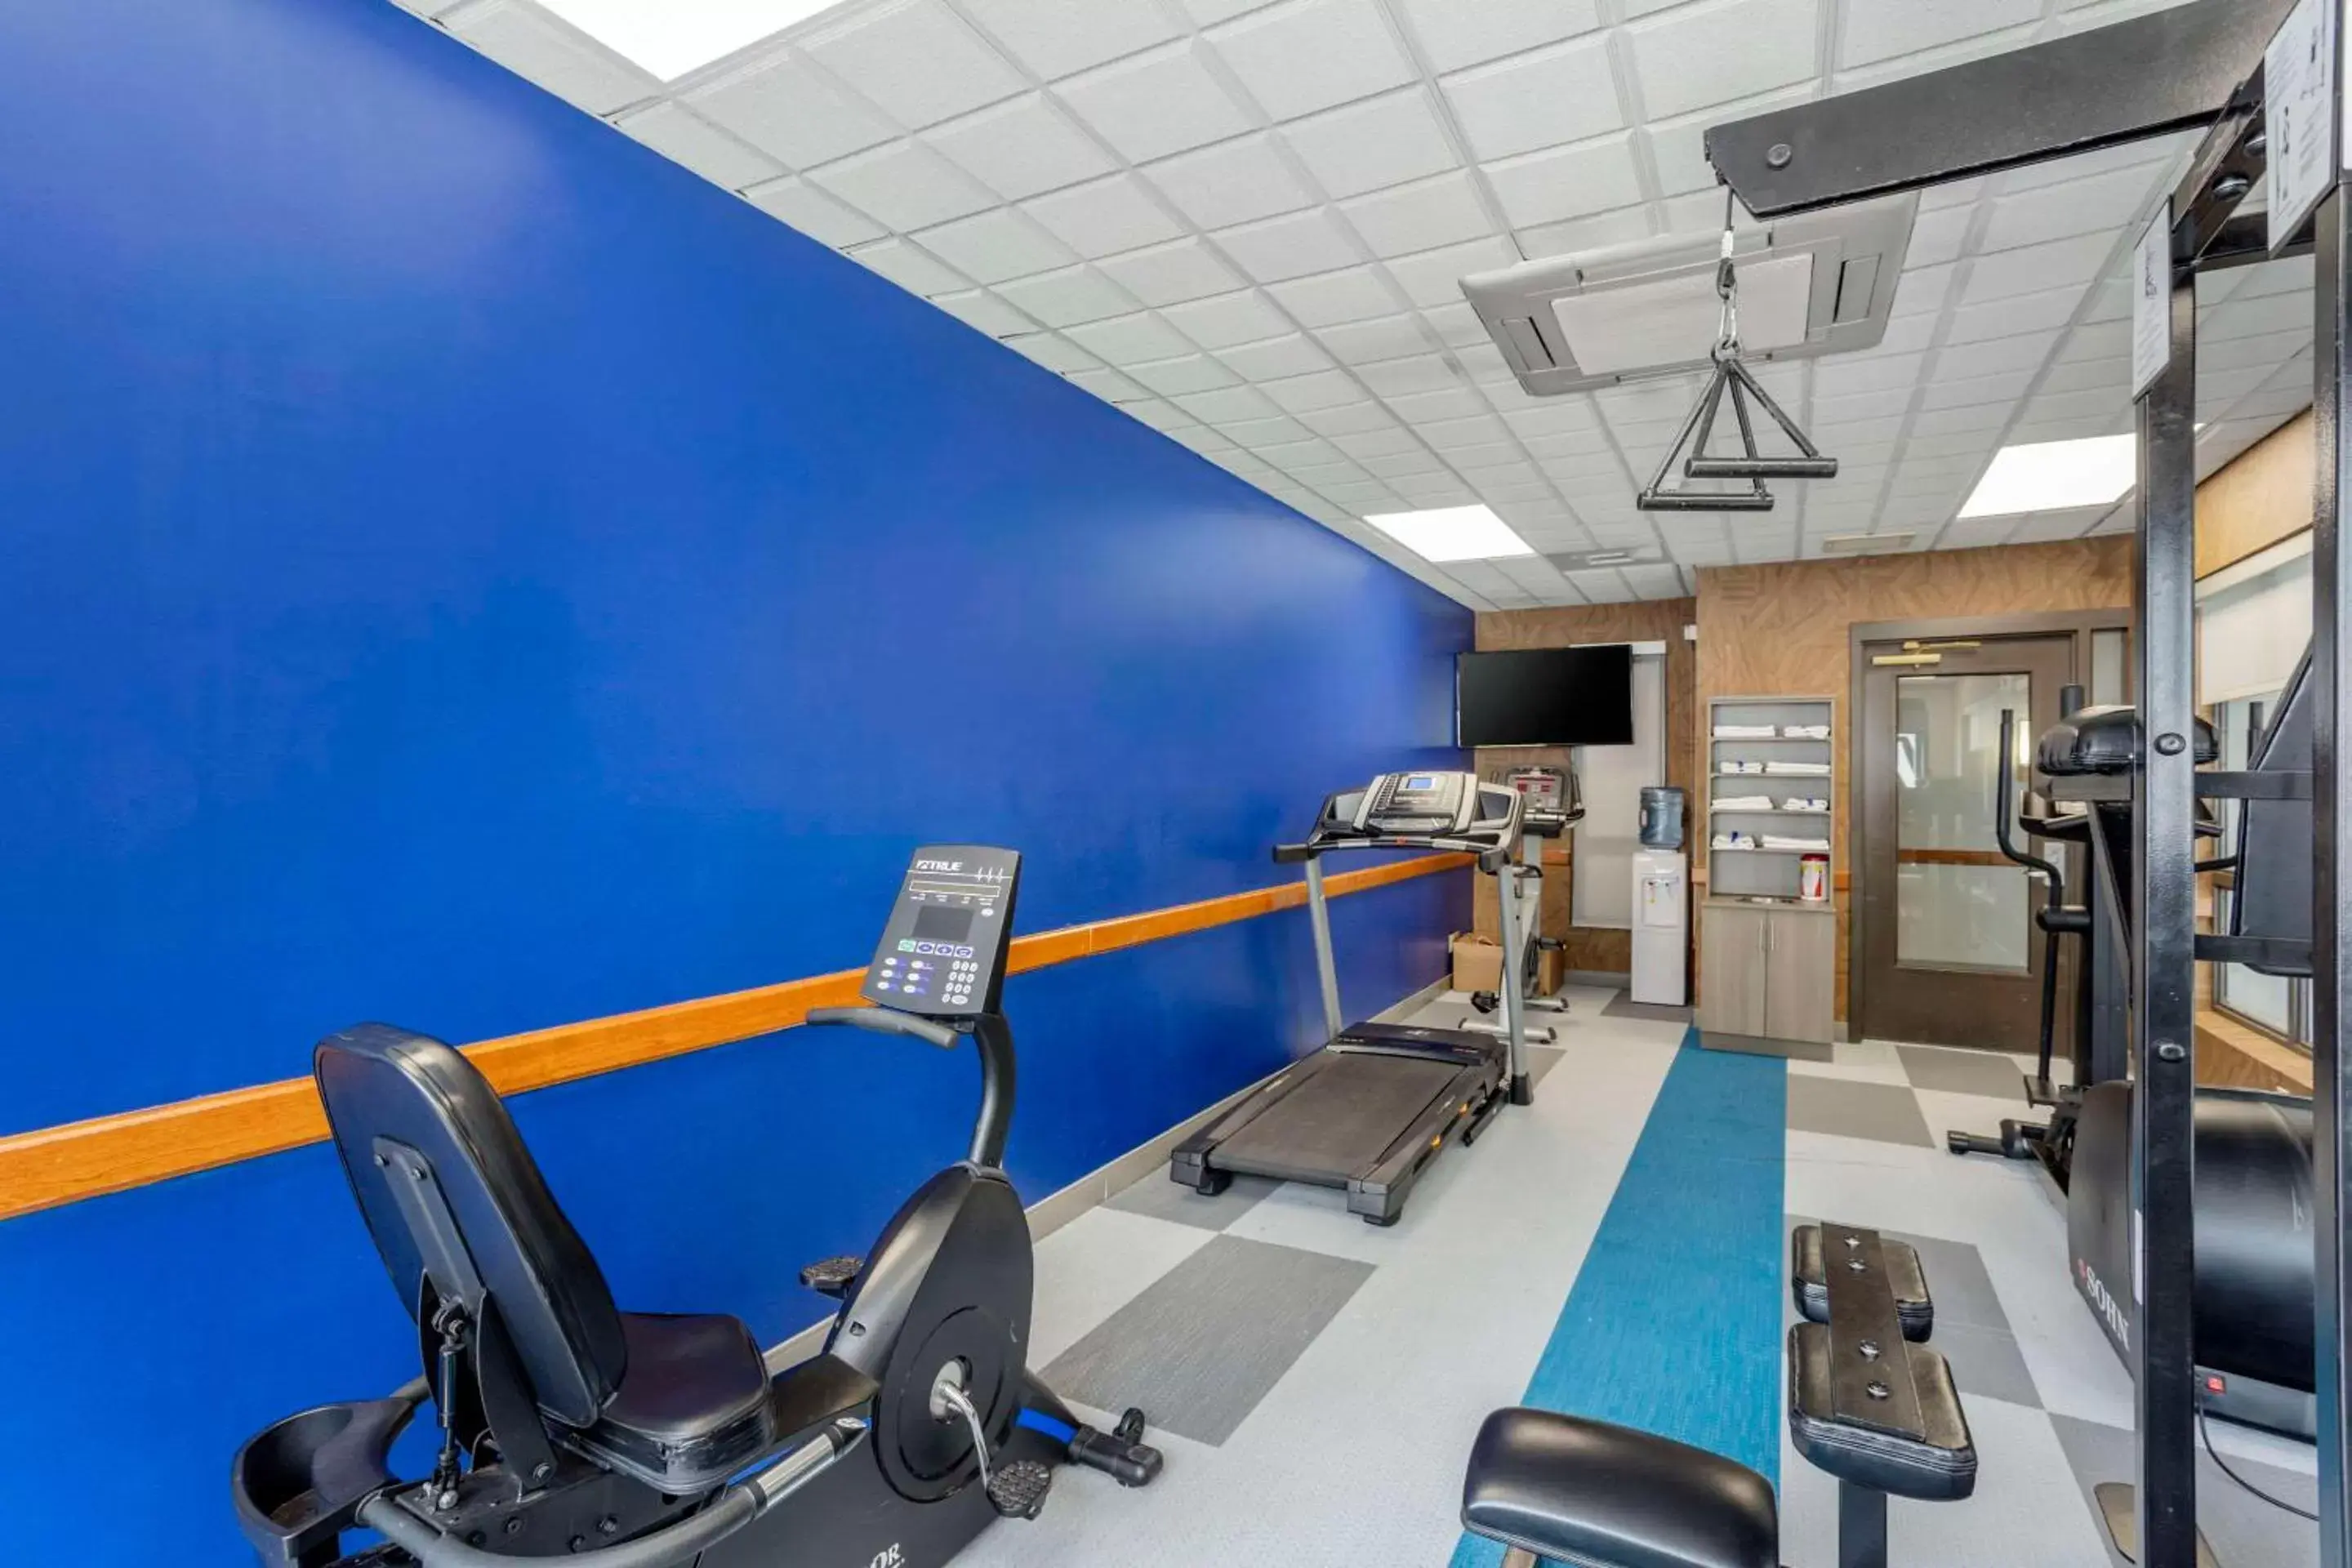 Fitness centre/facilities, Fitness Center/Facilities in Comfort Inn & Suites Voorhees - Mt Laurel